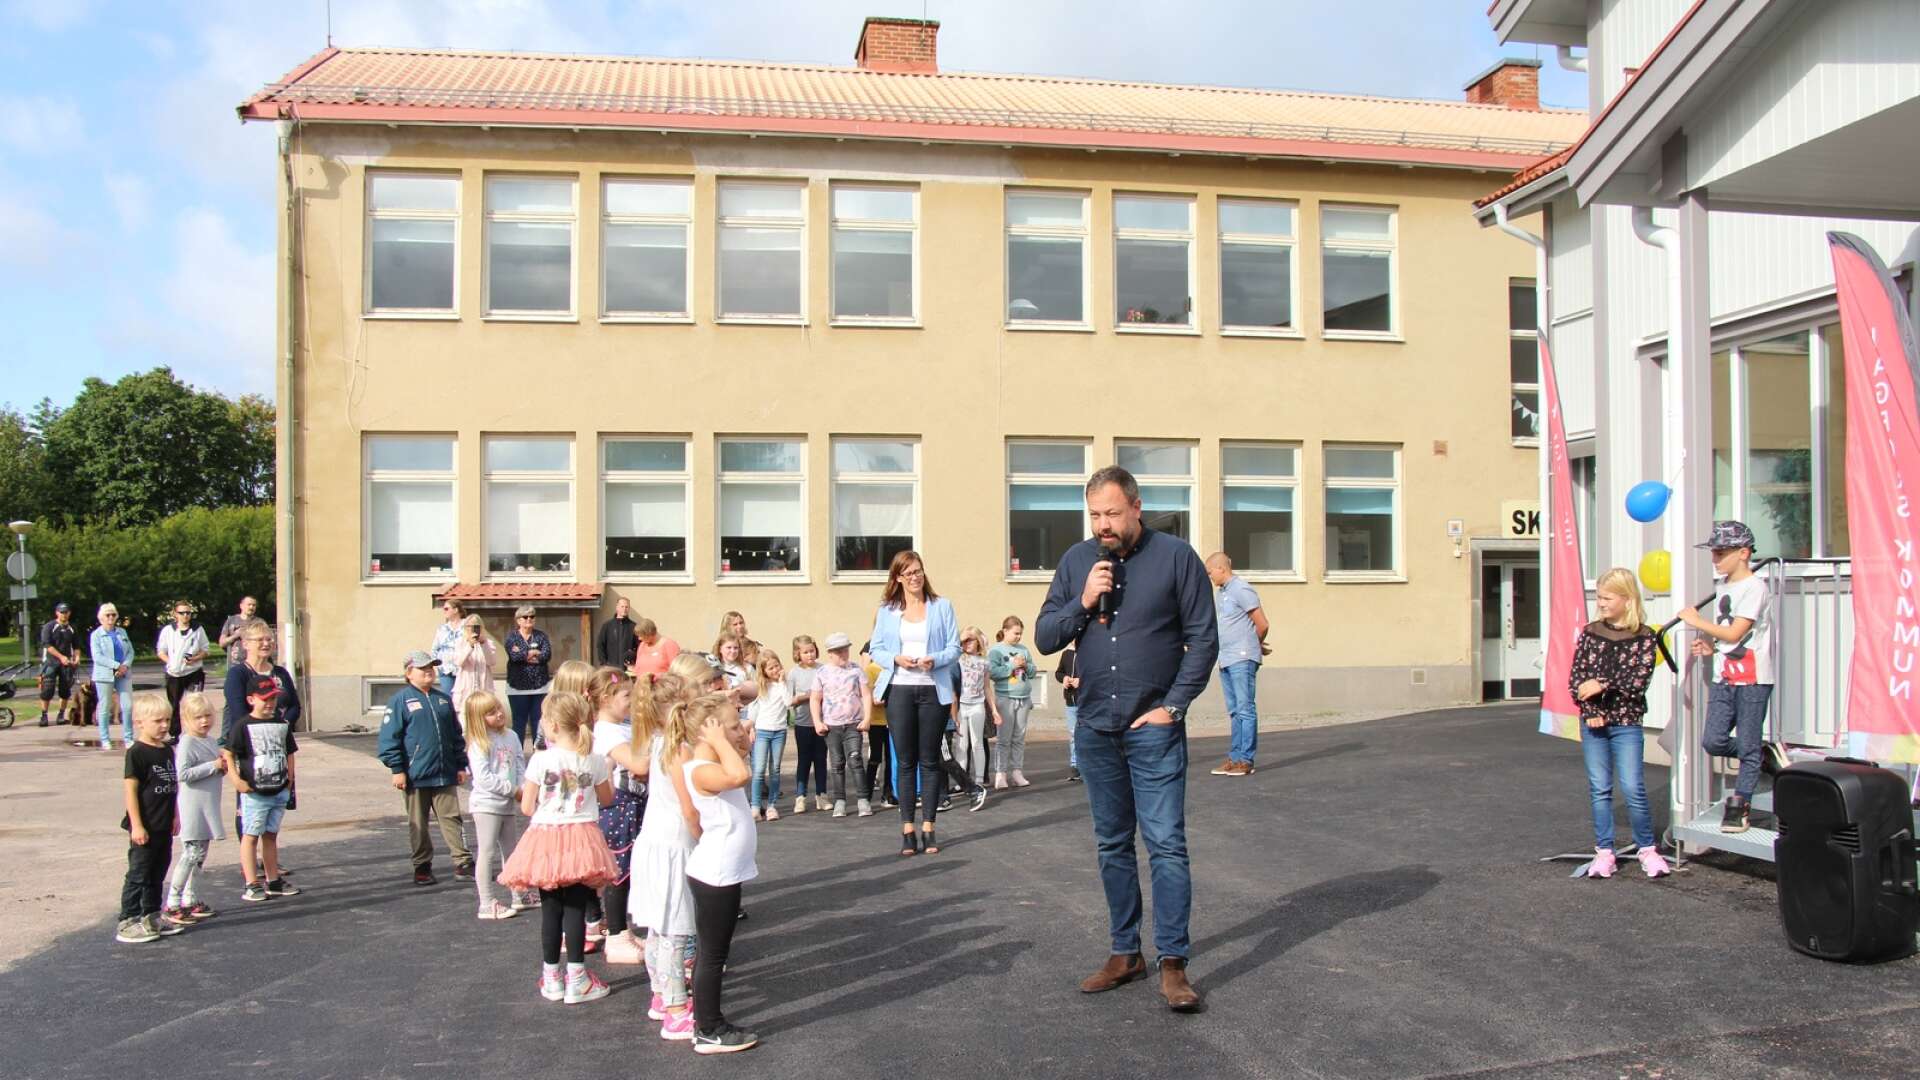 Så här såg det ut när lågstadiedelen av Råda skola invigdes 2019. Kommunalrådet Jens Fischer (OR) höll tal.